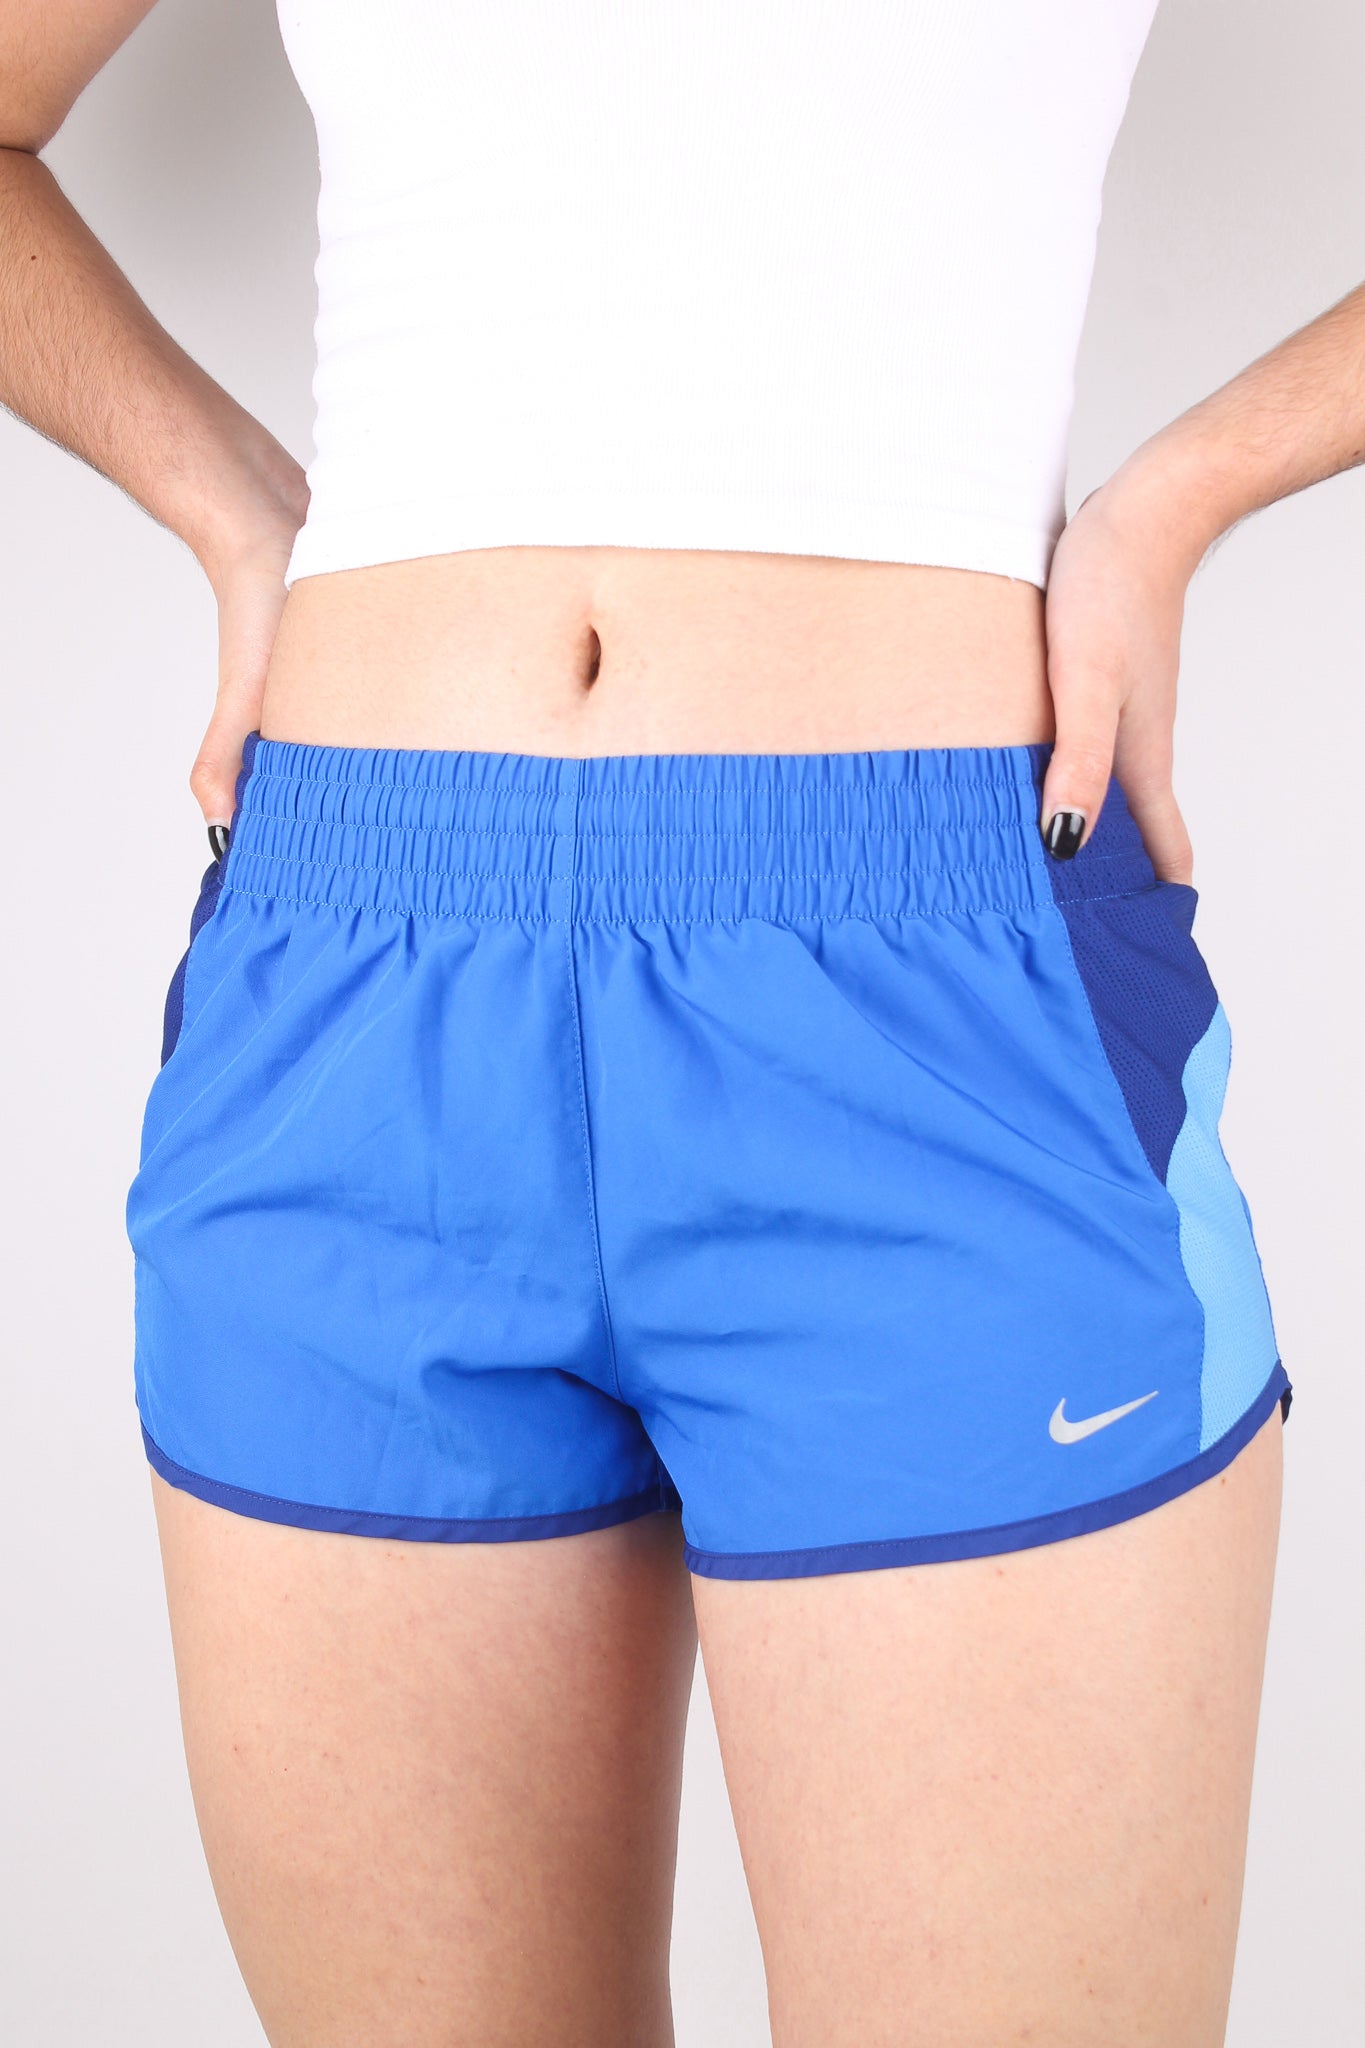 NIKE - Shorts Azules